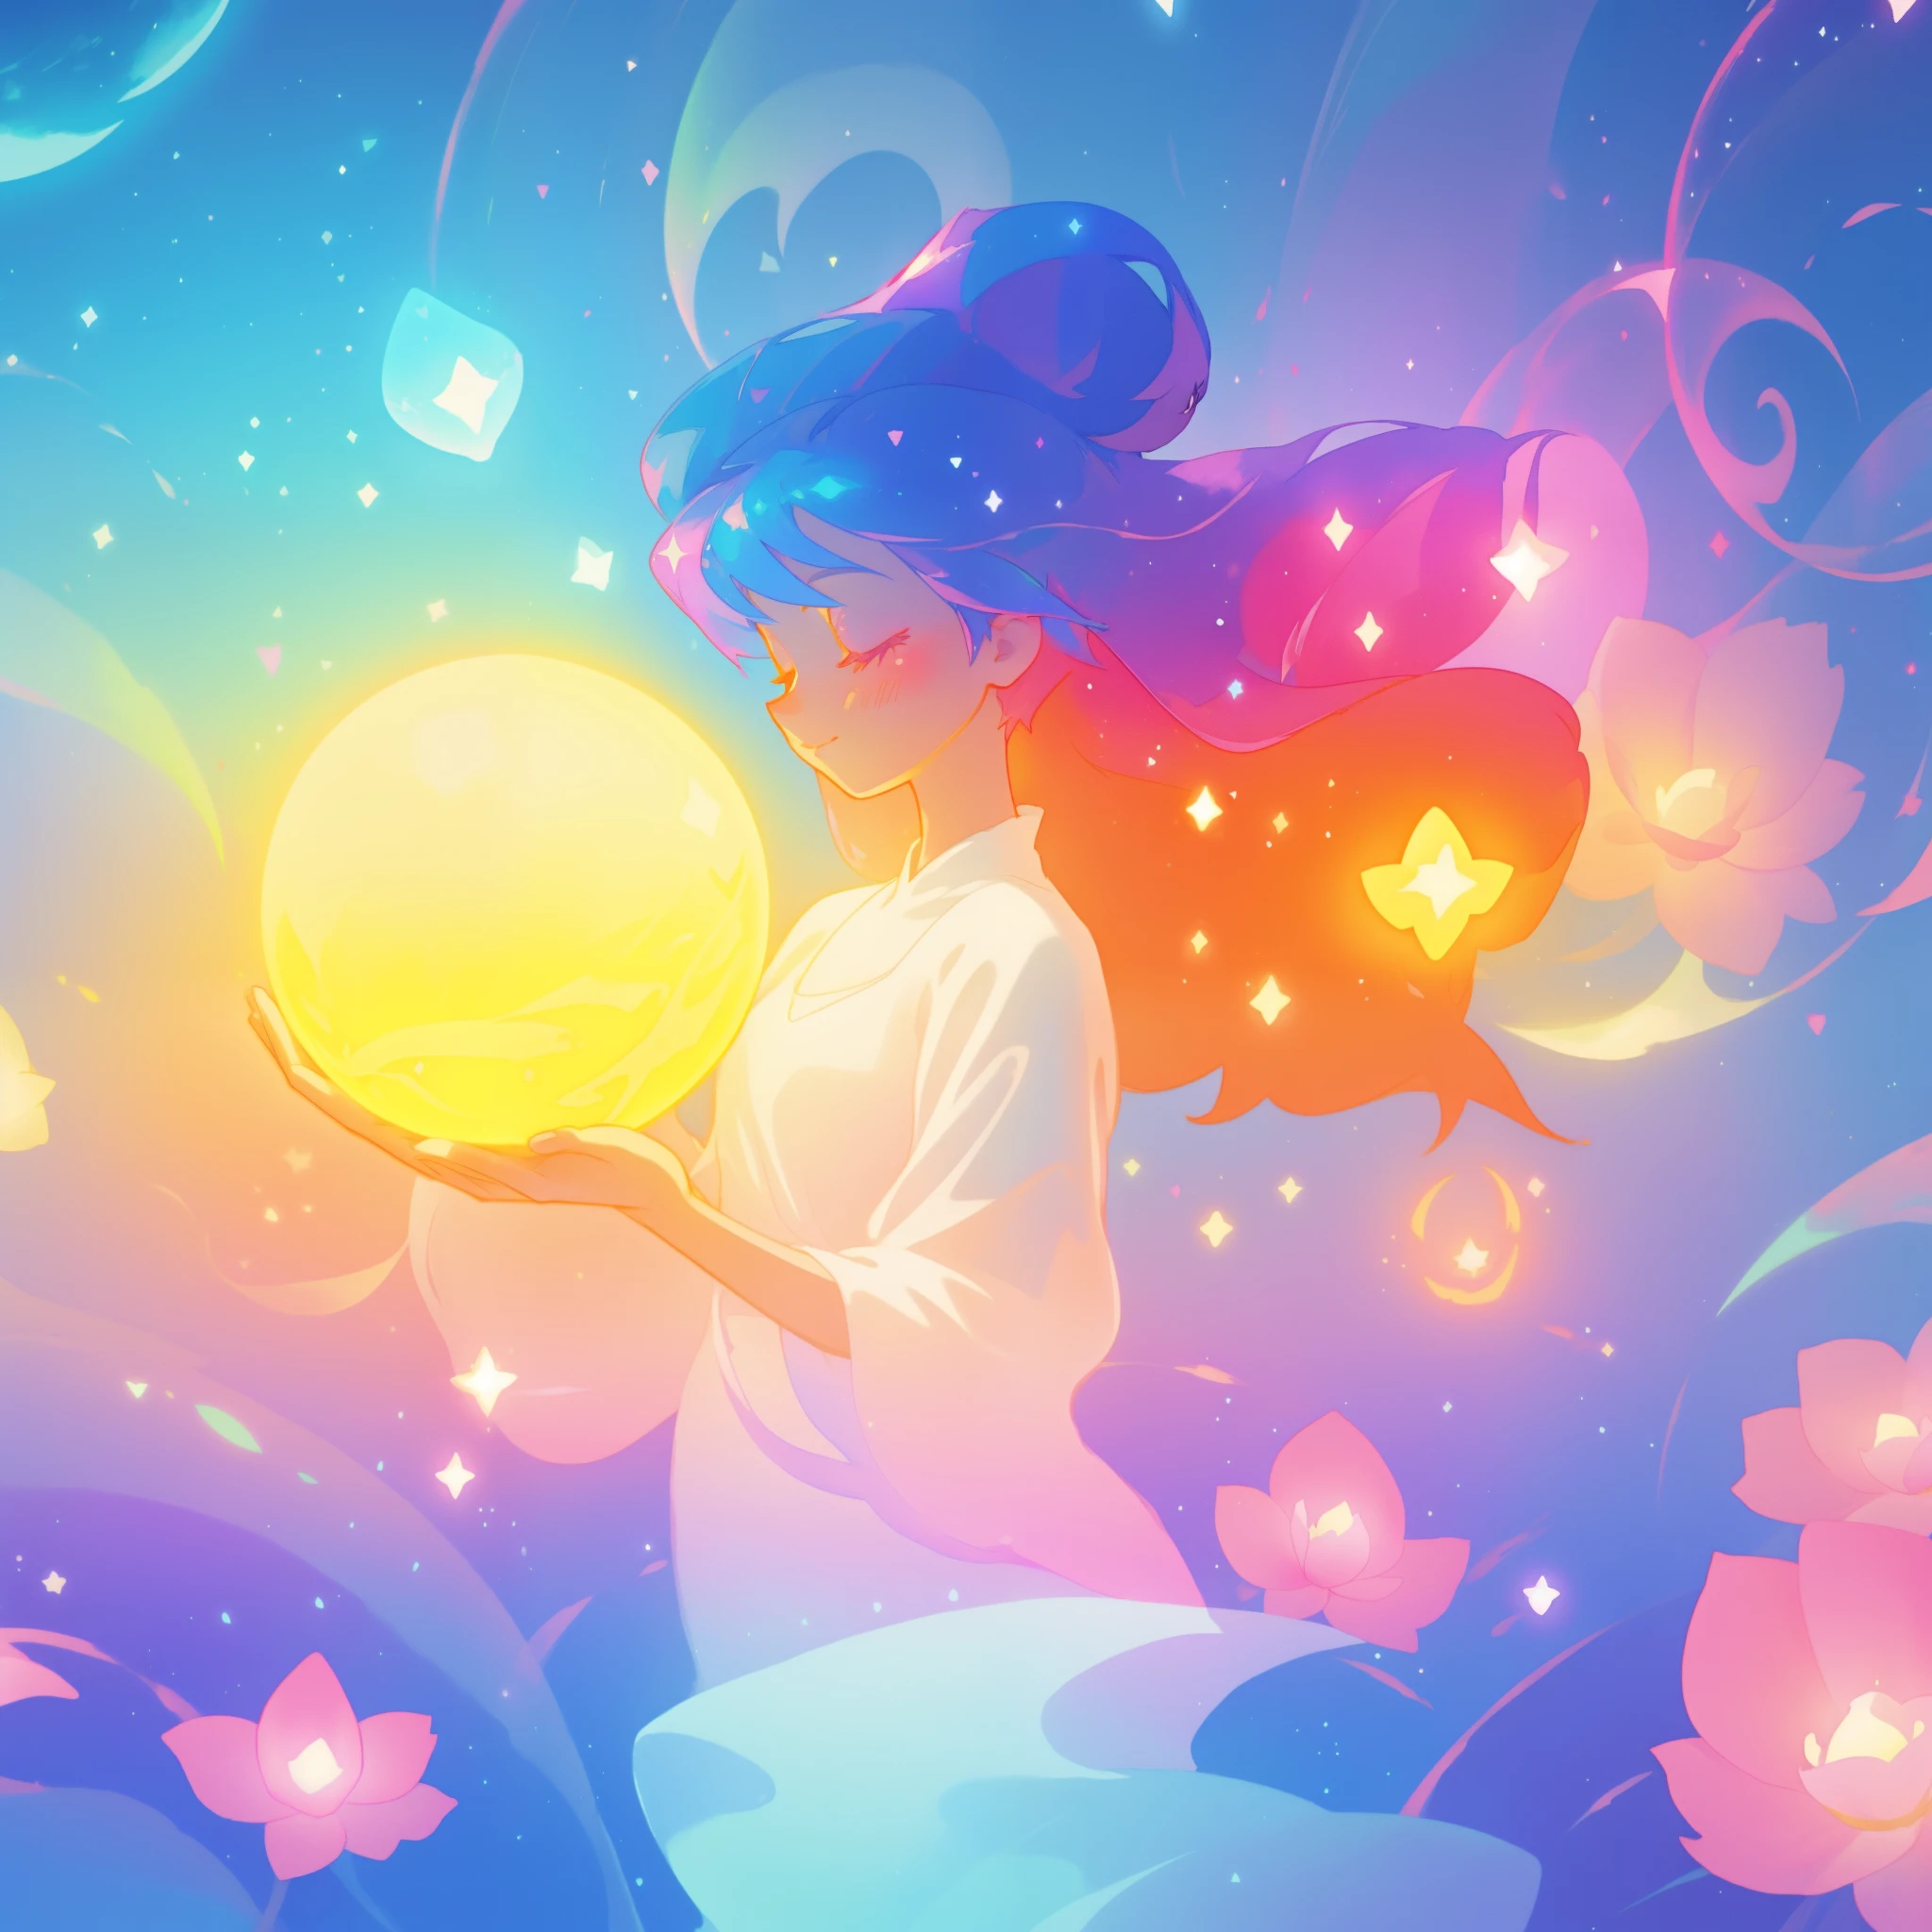 美しい girl in sparkling white dress holding a glowing 魔法の sphere, 光る夜会服, (魔法の, 気まぐれな), (魔法の orb), 長く流れるようなカラフルな髪, カラフルなファンタジアの背景, 水彩イラスト, ディズニーアートスタイル, 彼女の周囲に輝くオーラ, 光るライト, 美しい digital illustration, 幻想的な異世界の風景植物花, 美しい, 傑作, 最高品質, アニメディズニースタイル, (完璧な手), プロフィールビュー, 目を閉じて, オーブを見ている